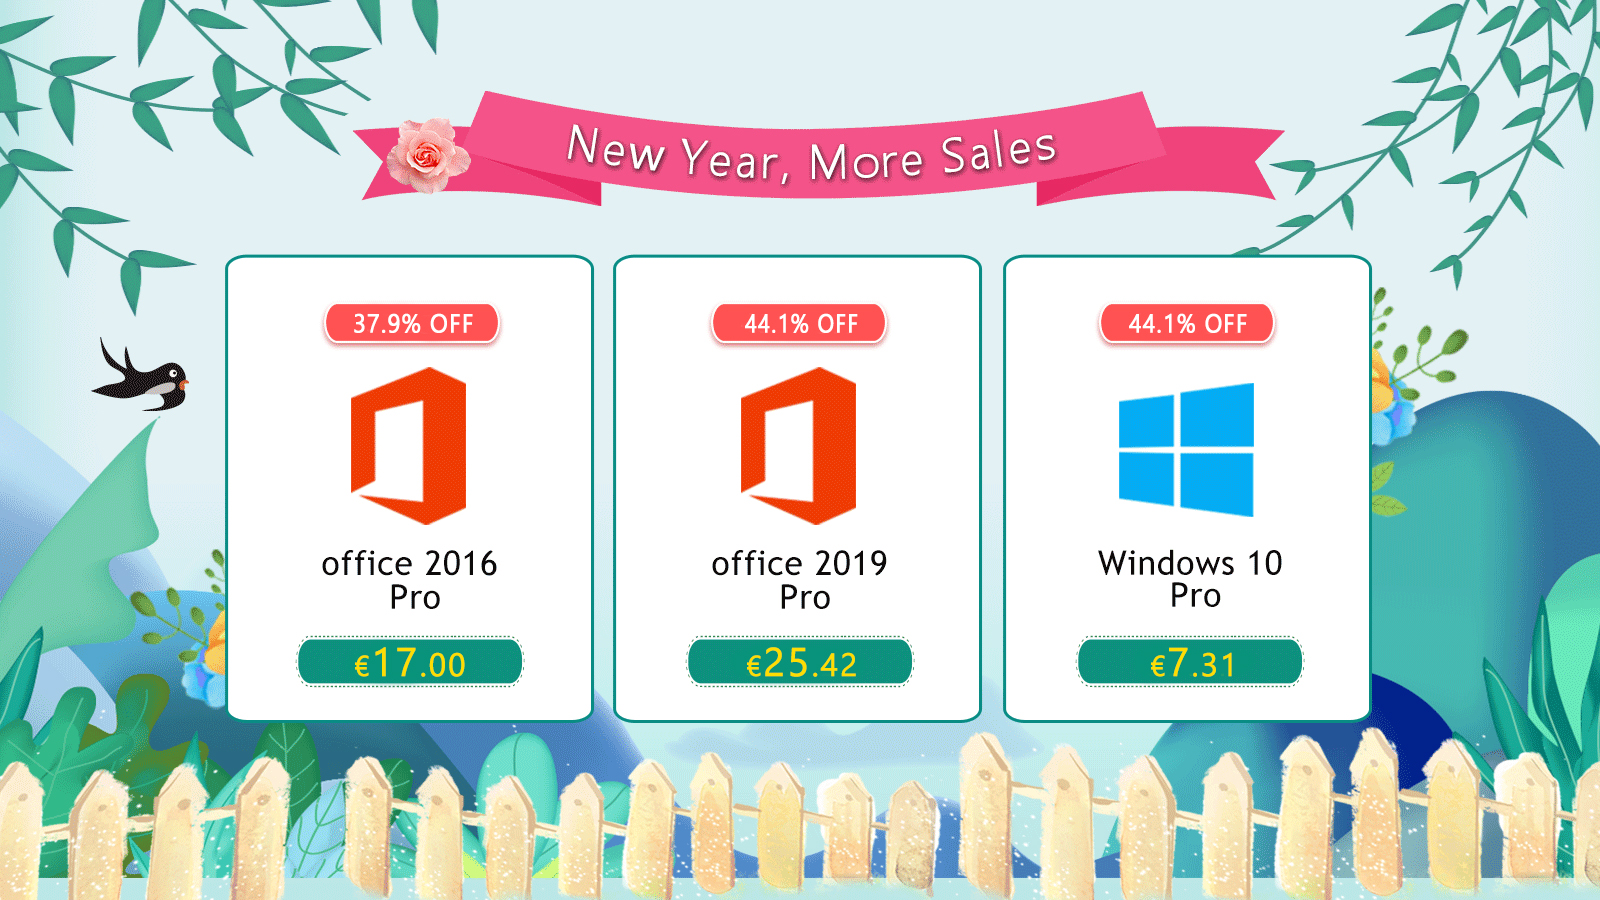 , Αποκτήστε δημοφιλές λογισμικό Windows 10 Pro με €7.31 και Office 2016 Pro με €17